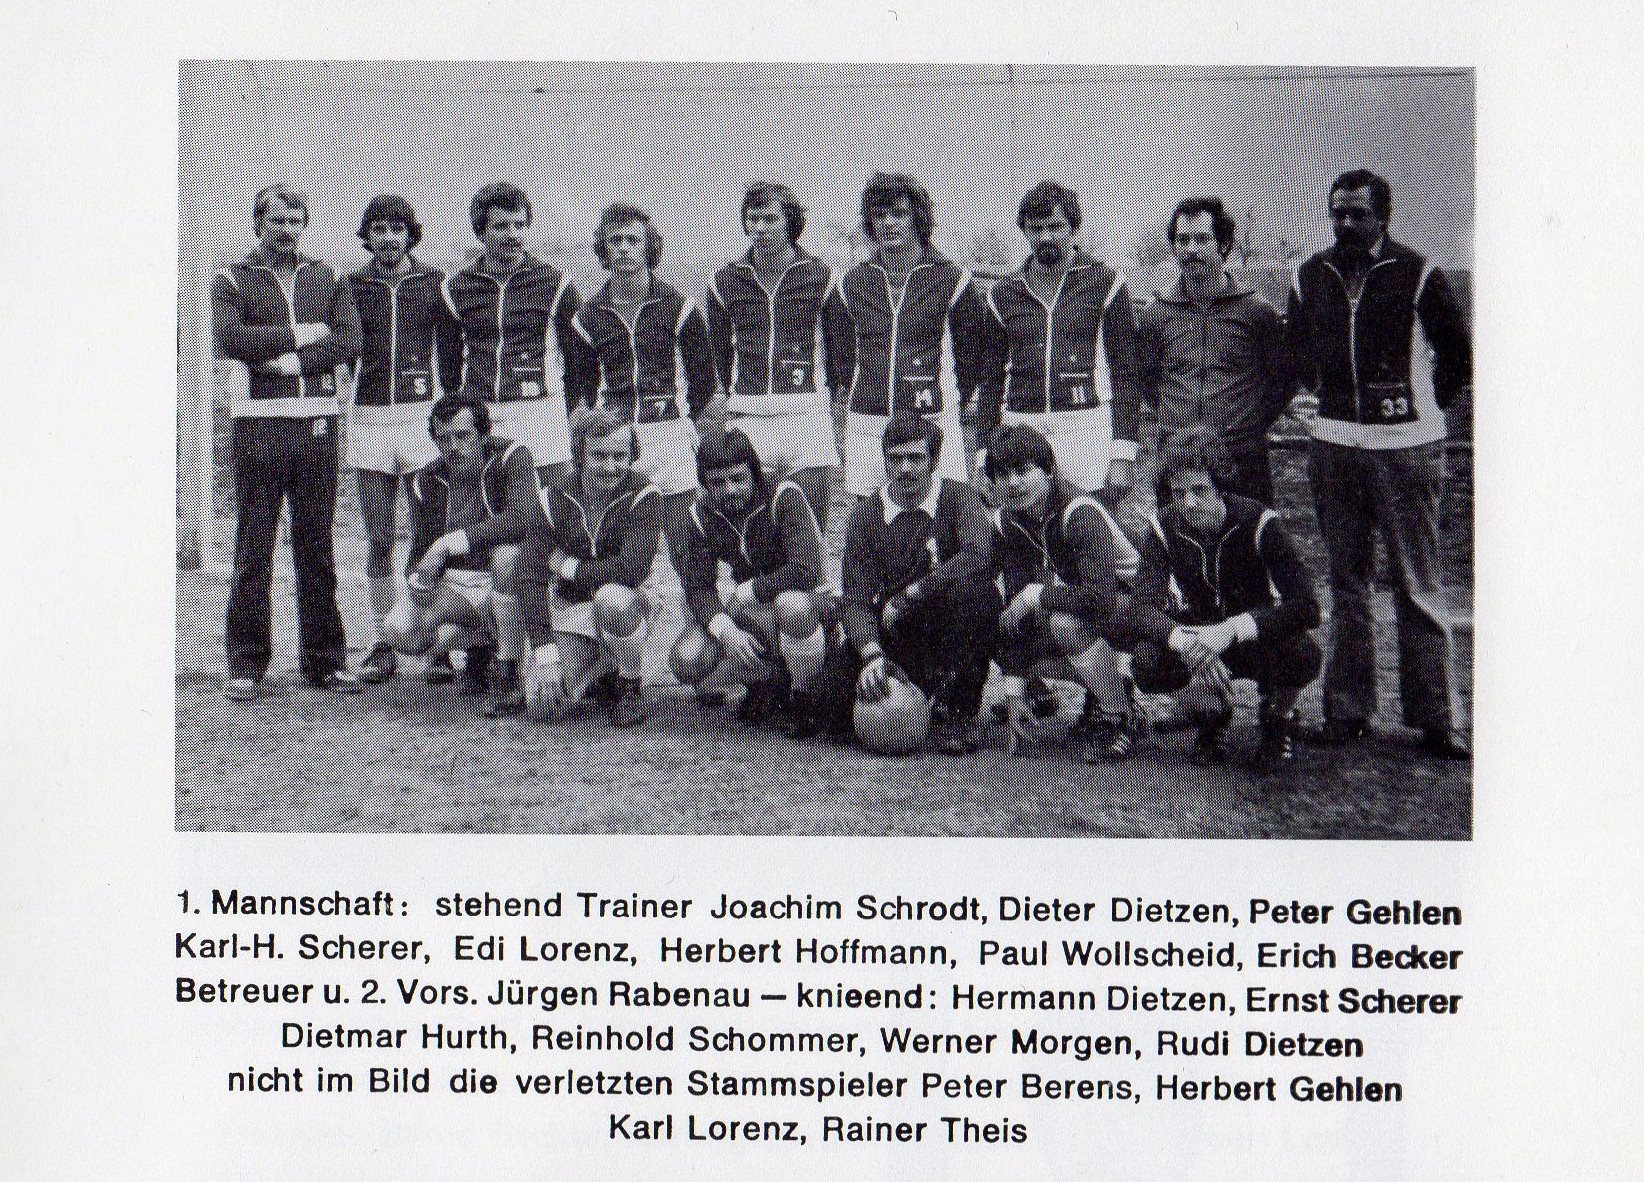 Mannschaft 1979